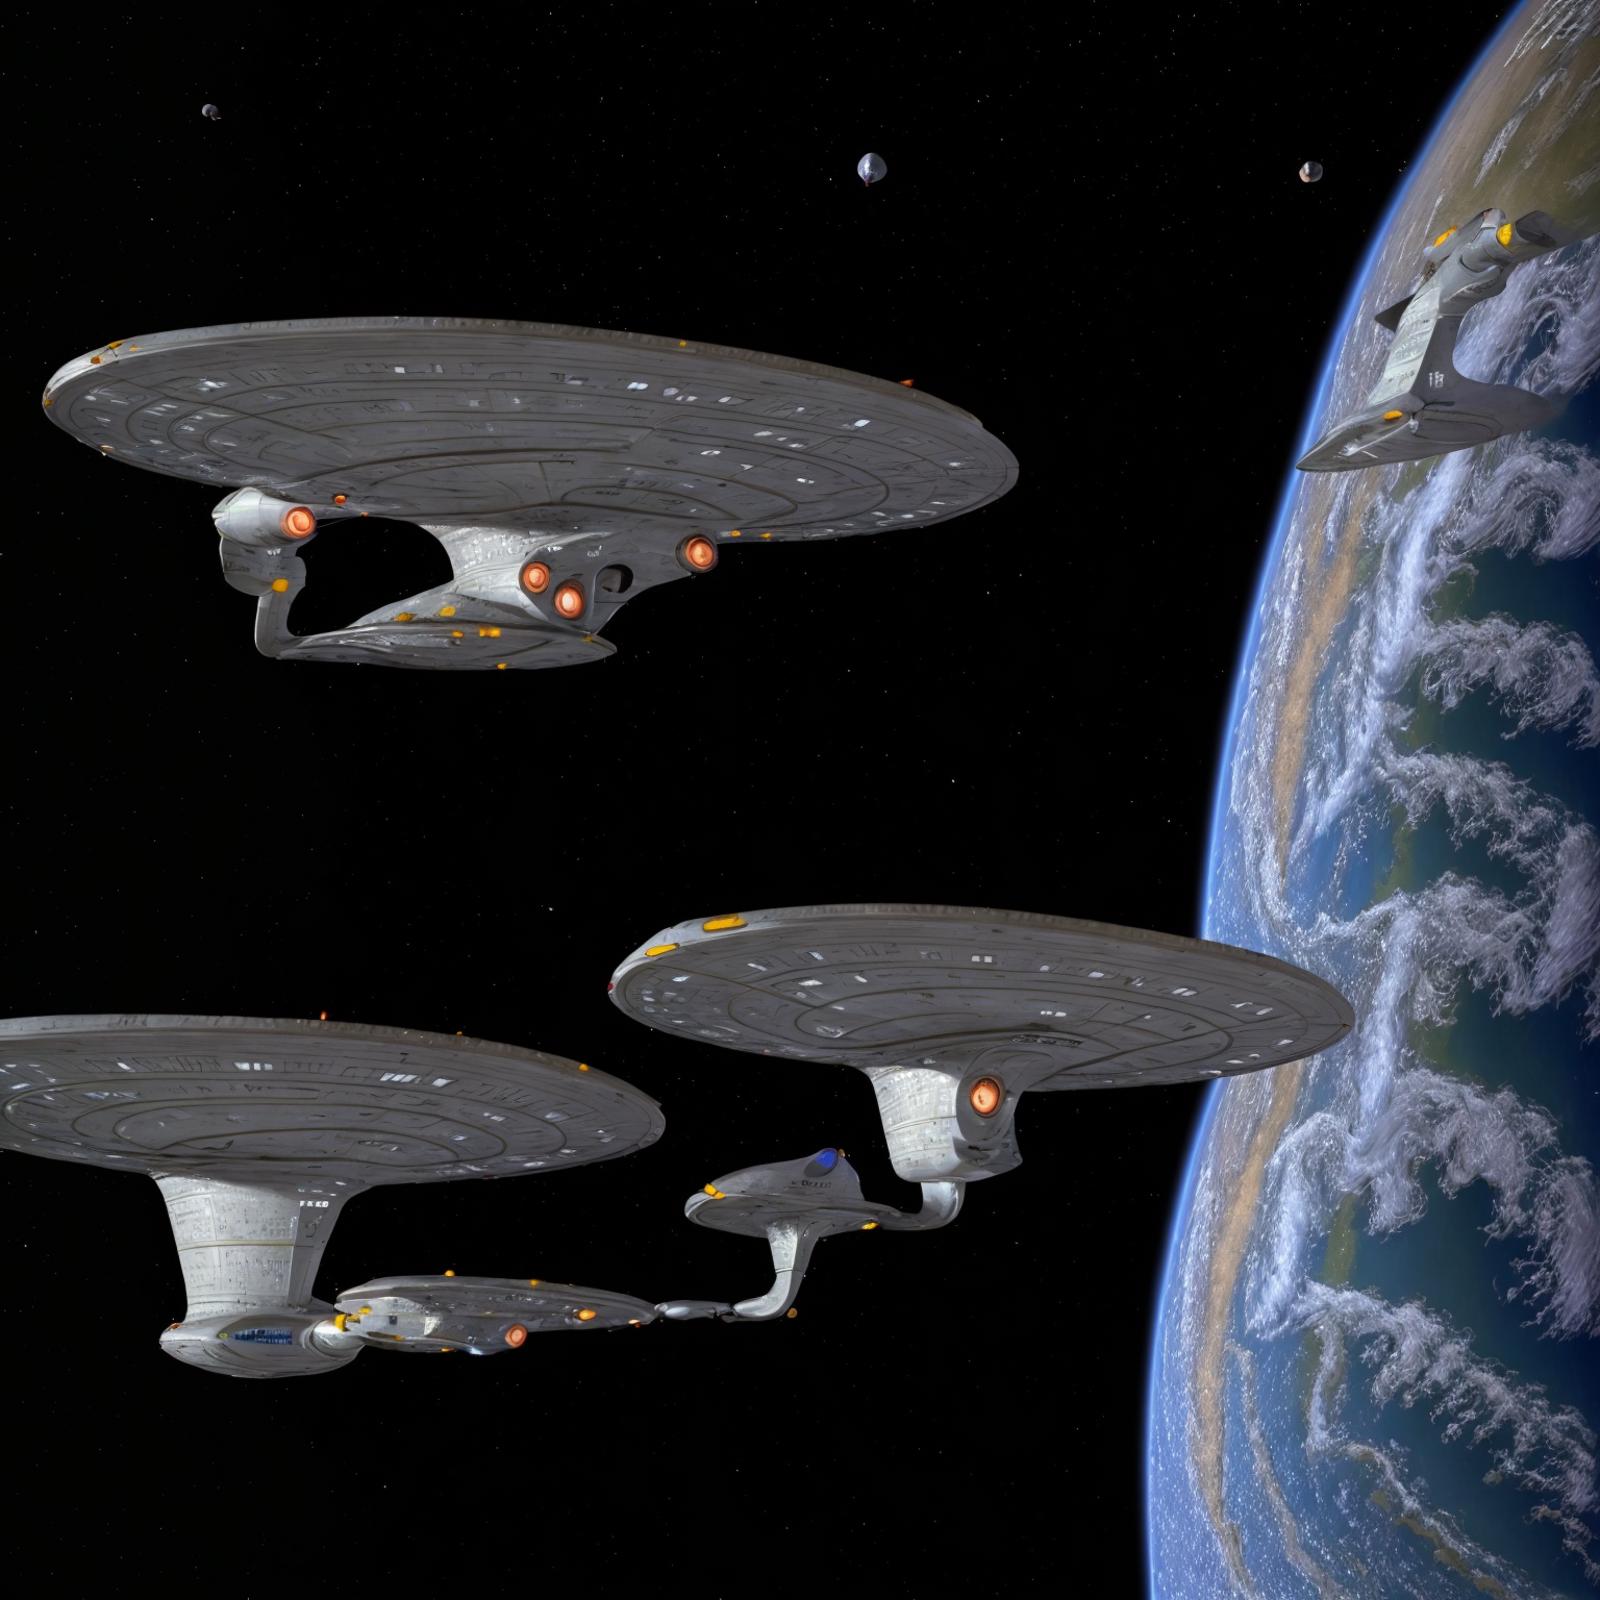 Star Trek - Ships Enterprise image by ElPerroRetro